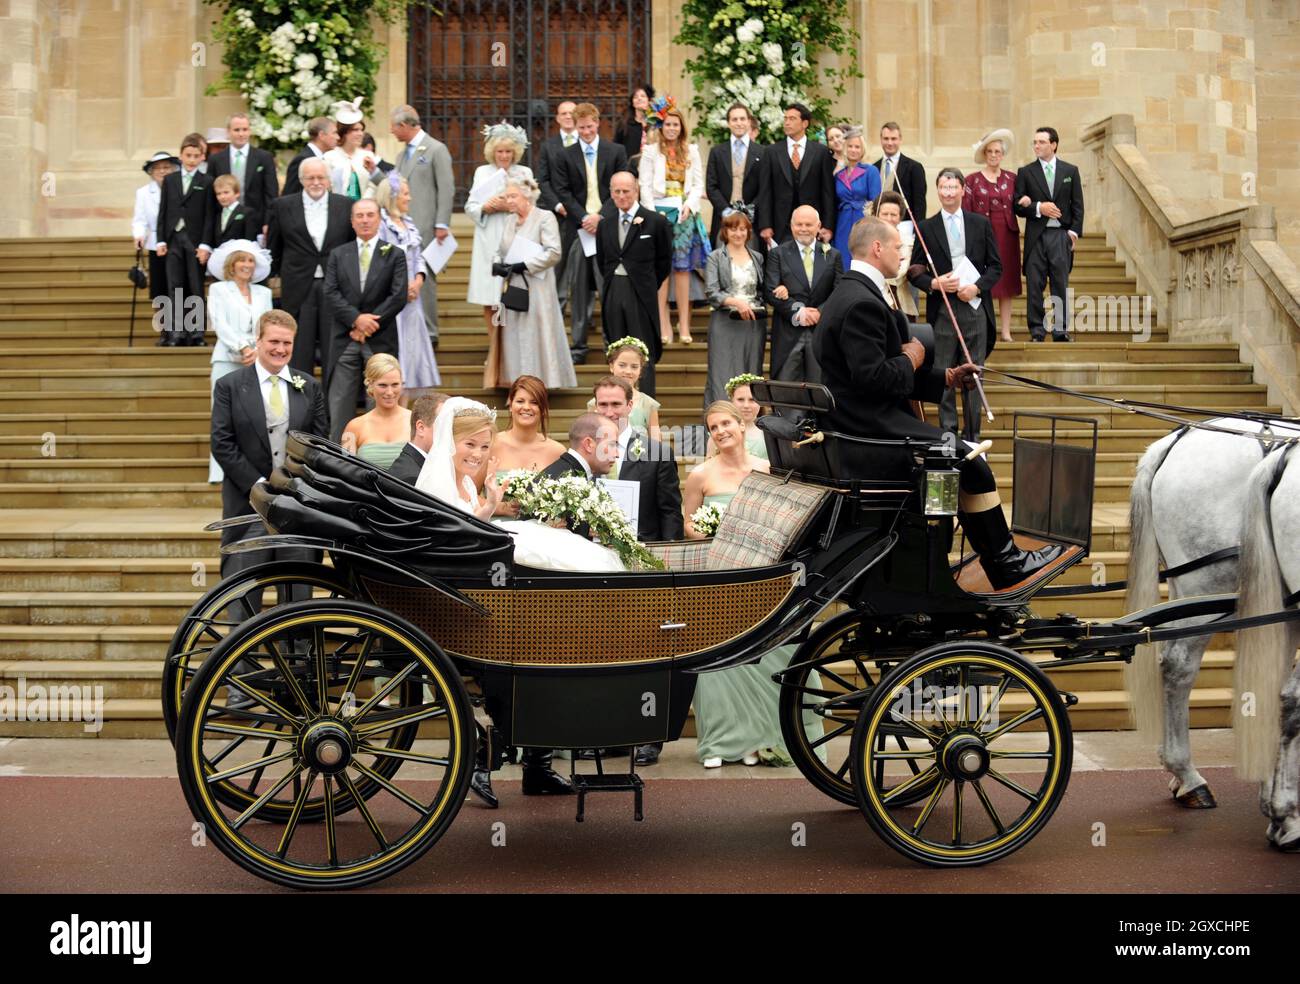 Peter Phillips e Autunno Kelly lasciano la Cappella di San Giorgio in carrozza trainata da cavalli dopo la cerimonia di matrimonio al Castello di Windor, Windsor. Foto Stock